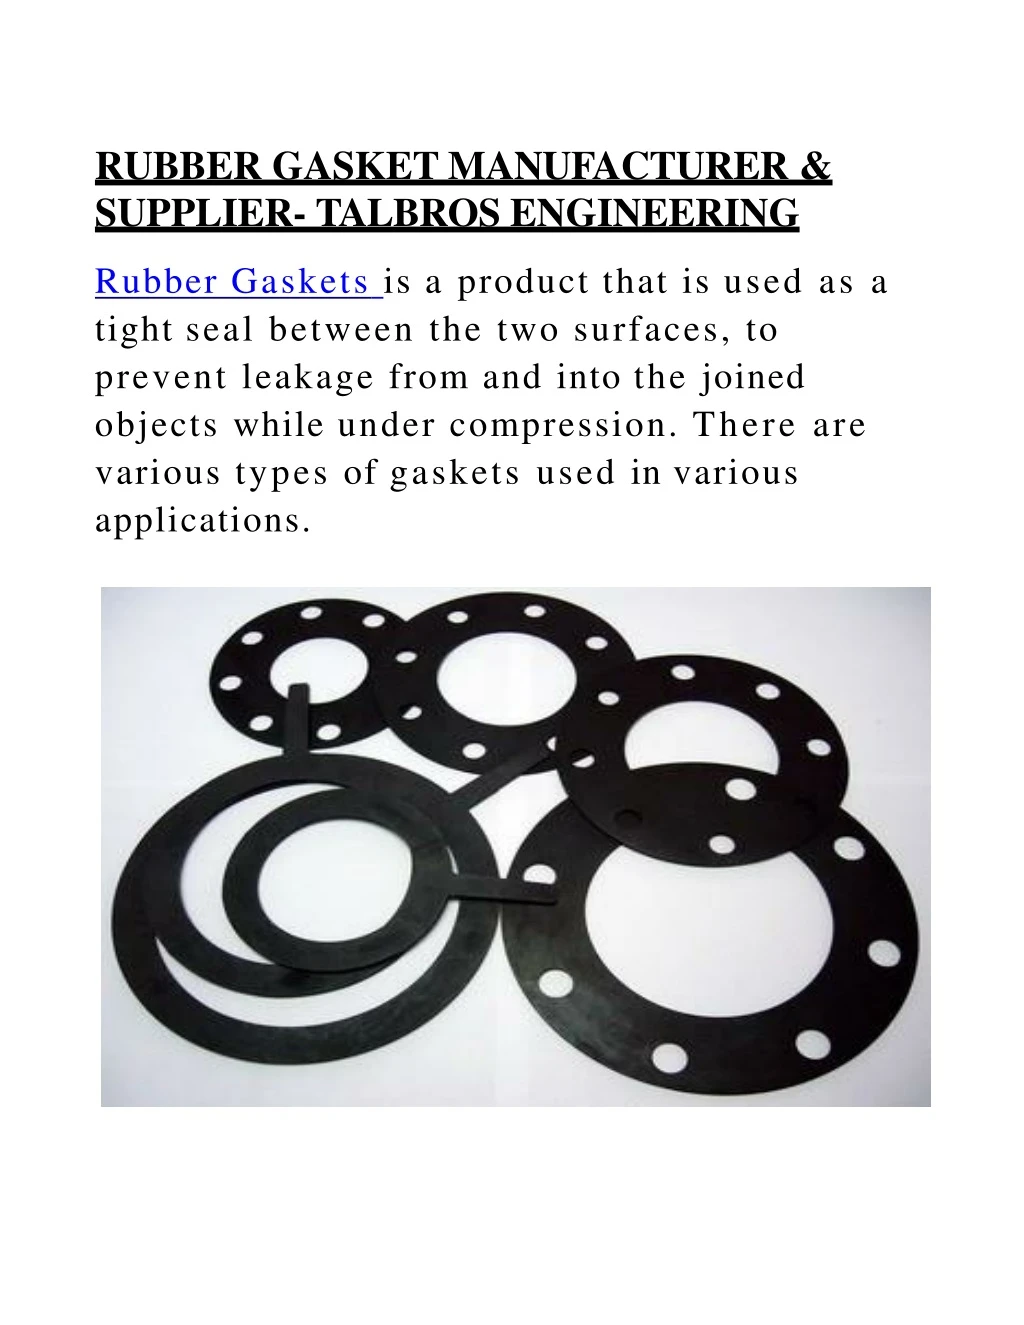 rubber gasket manufacturer supplier talbros